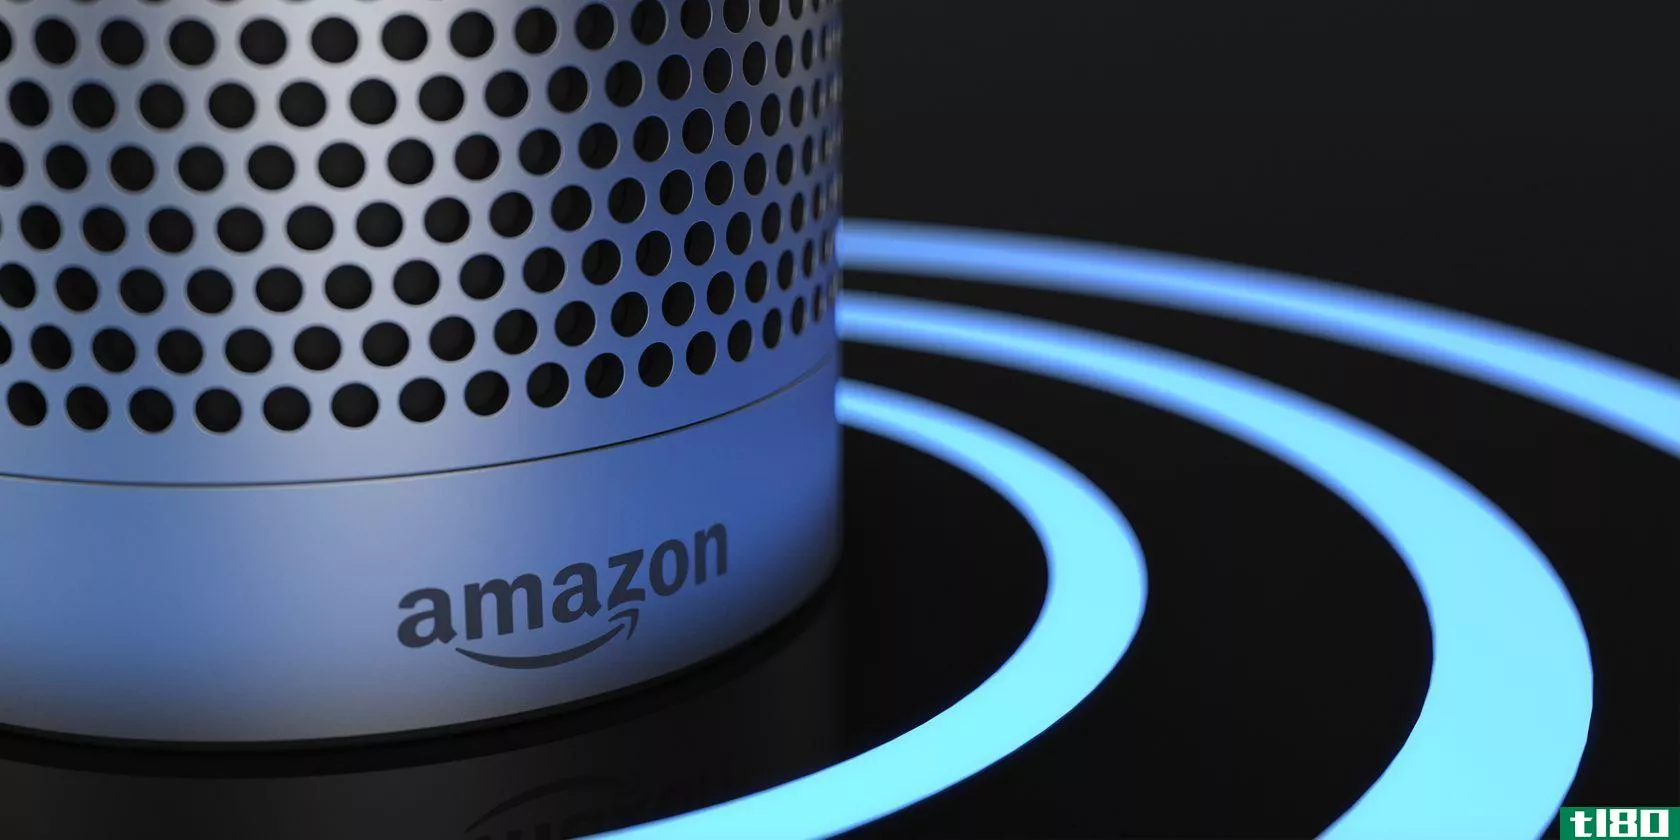 An Amazon Alexa